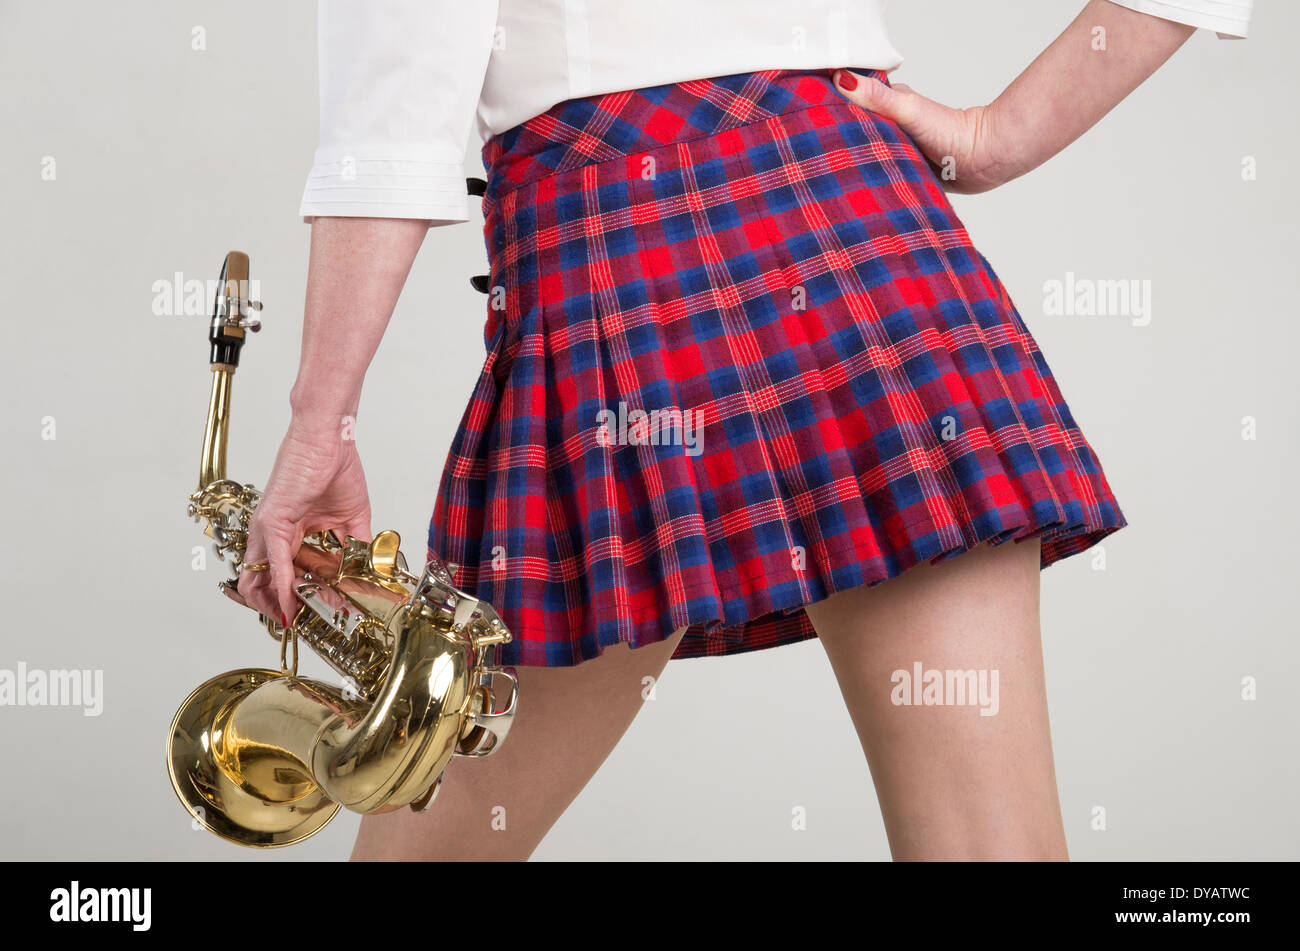 Femme en jupe tartan courts portant un sax Saxophone Banque D'Images